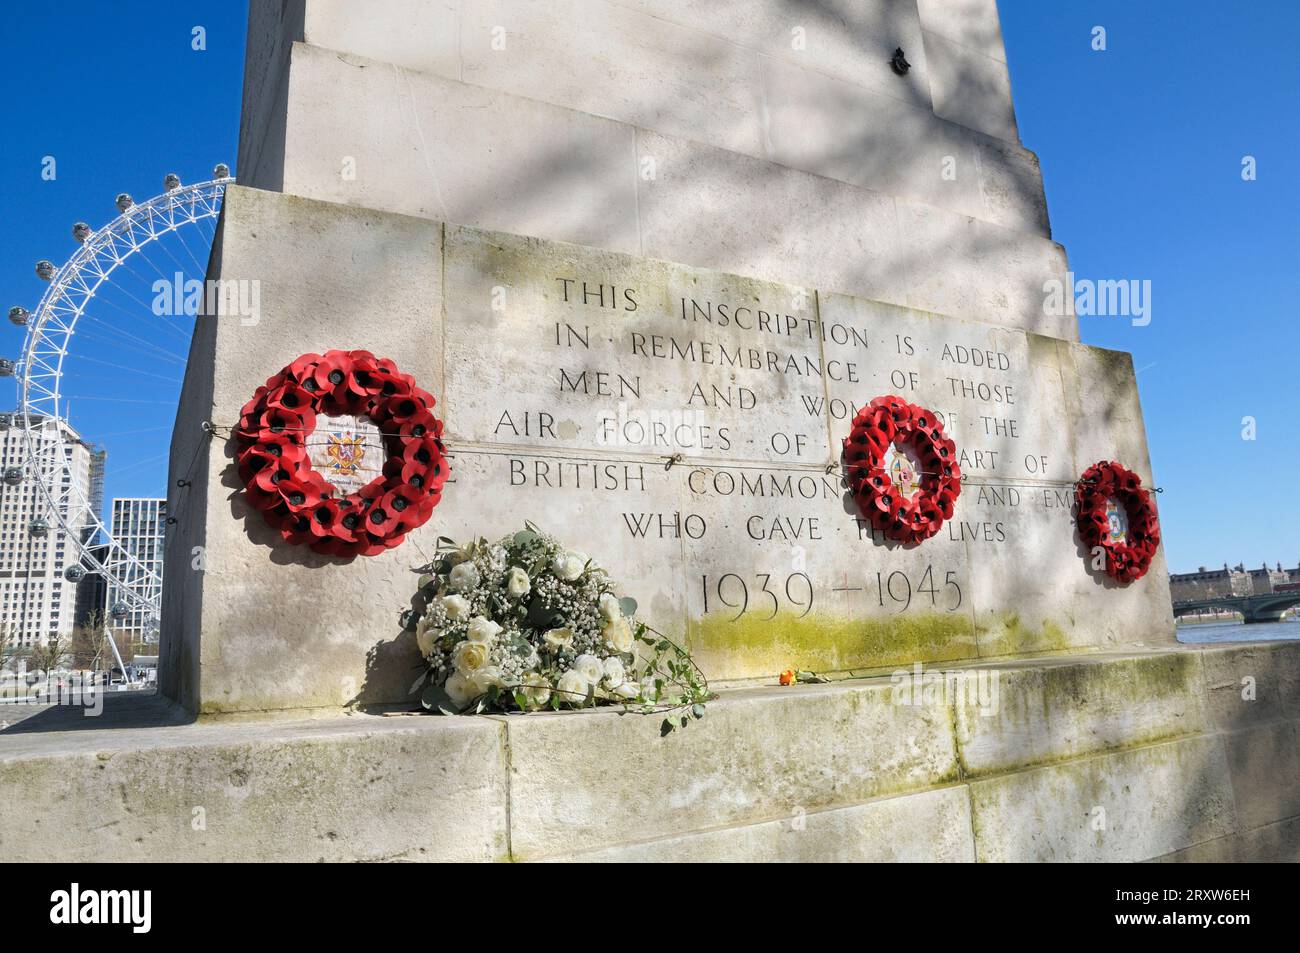 Le Royal Air Force Memorial / RAF Memorial avec inscription, fleurs et couronnes de coquelicots, Whitehall Stairs, Victoria Embankment, Londres Angleterre, Royaume-Uni Banque D'Images